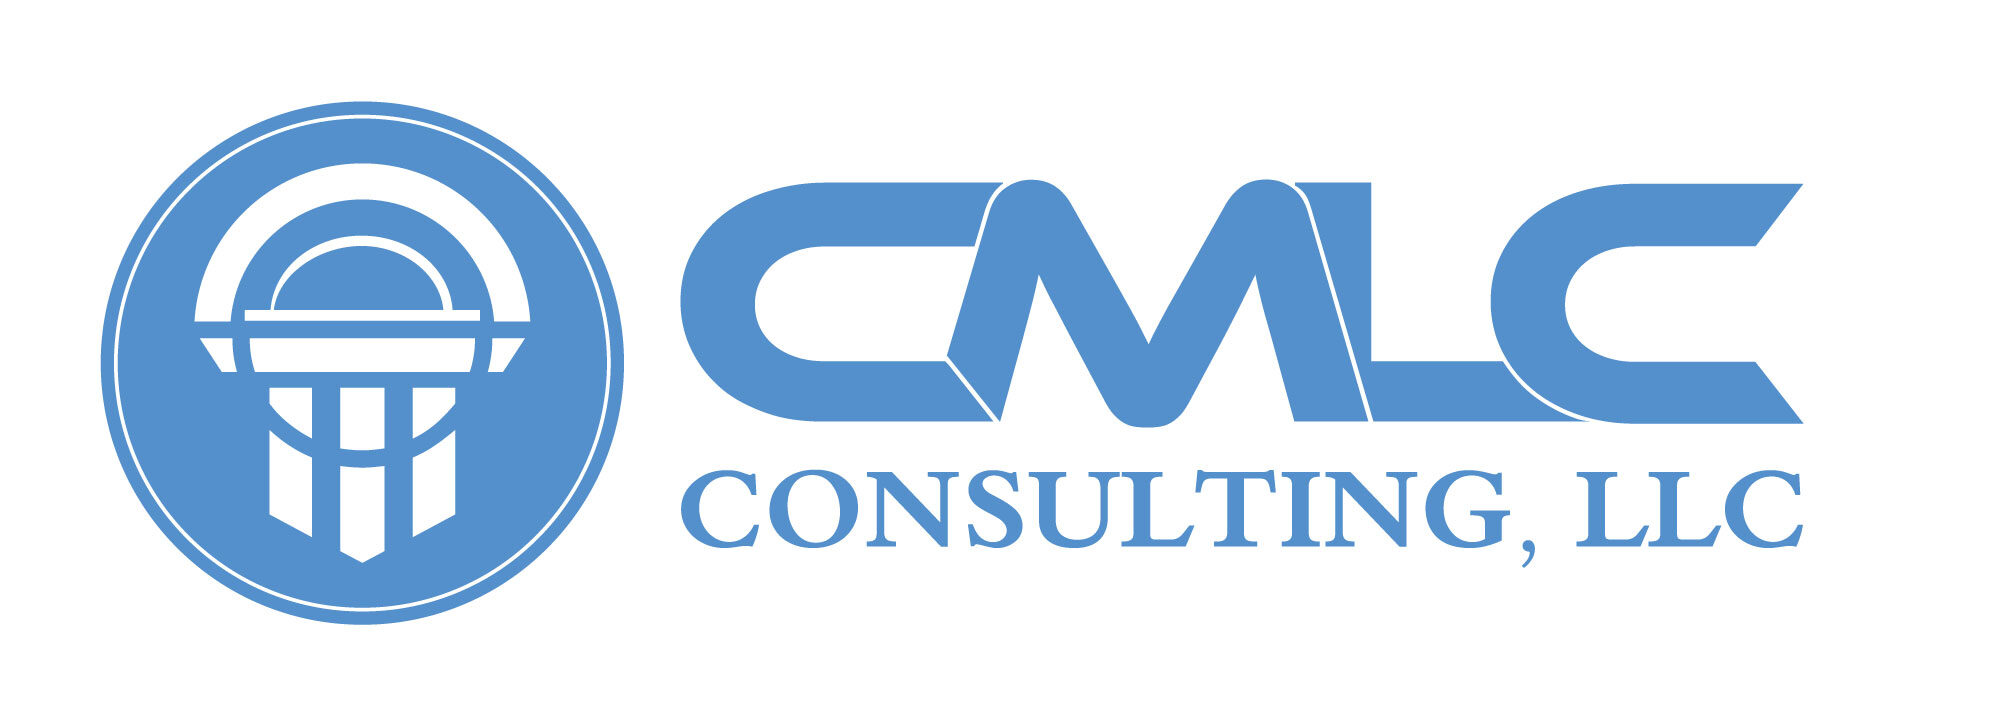 CMLC Consulting, LLC